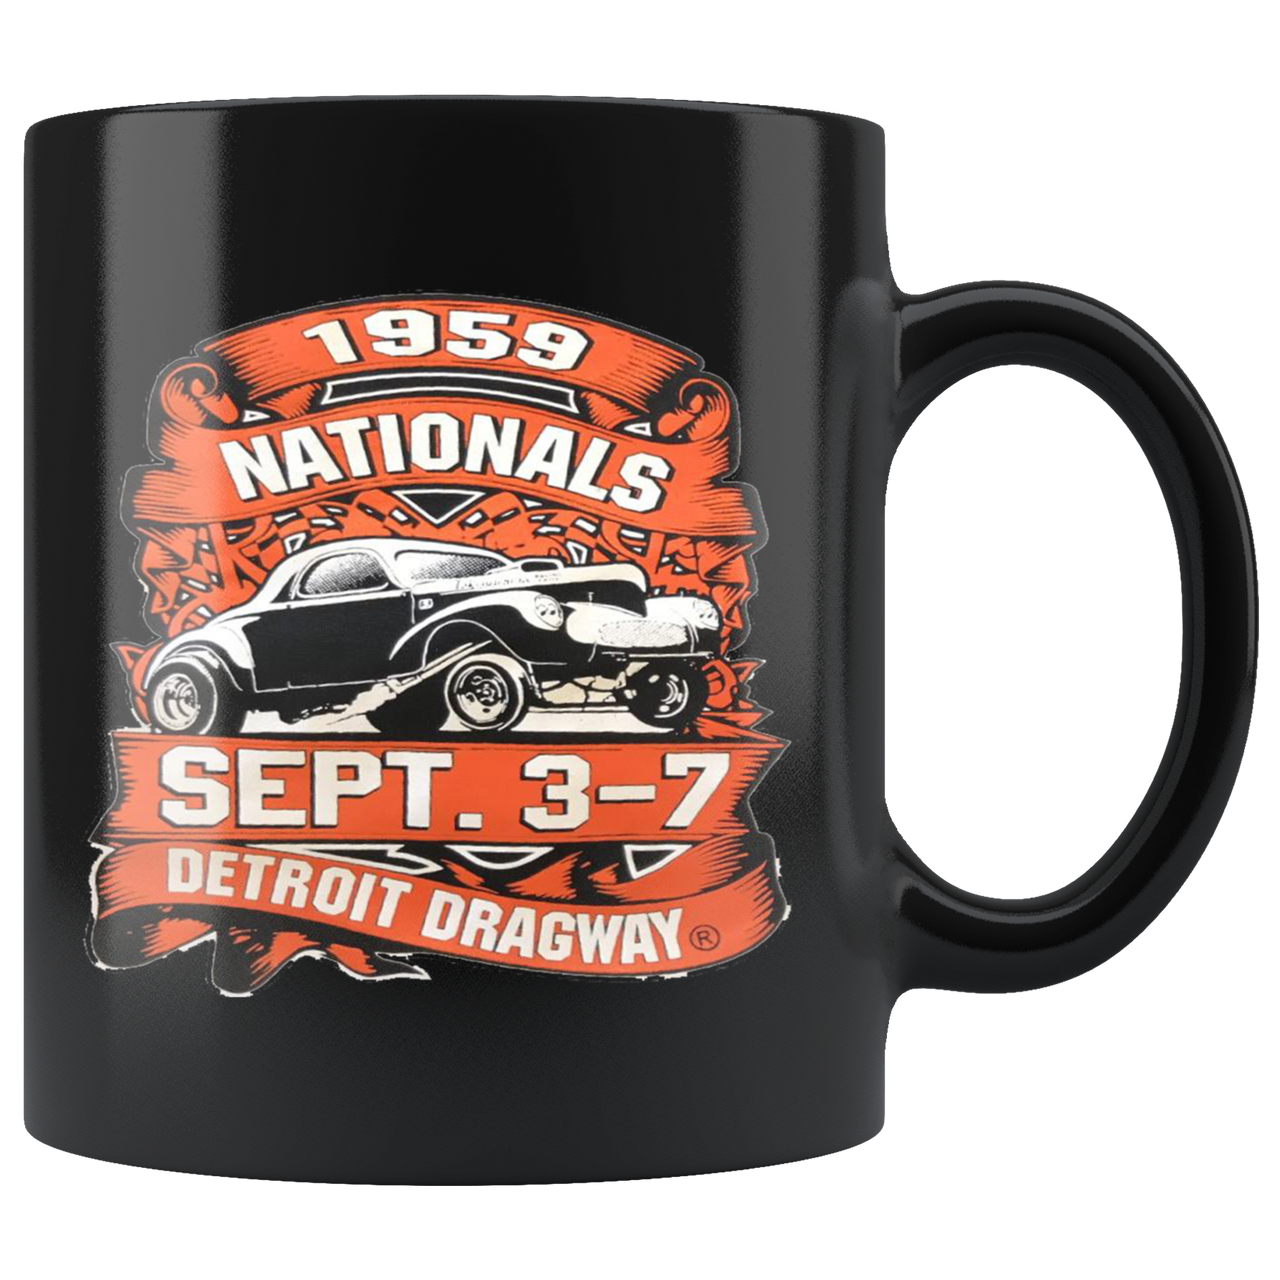 Detroit Dragway 1959 Nationals Mug